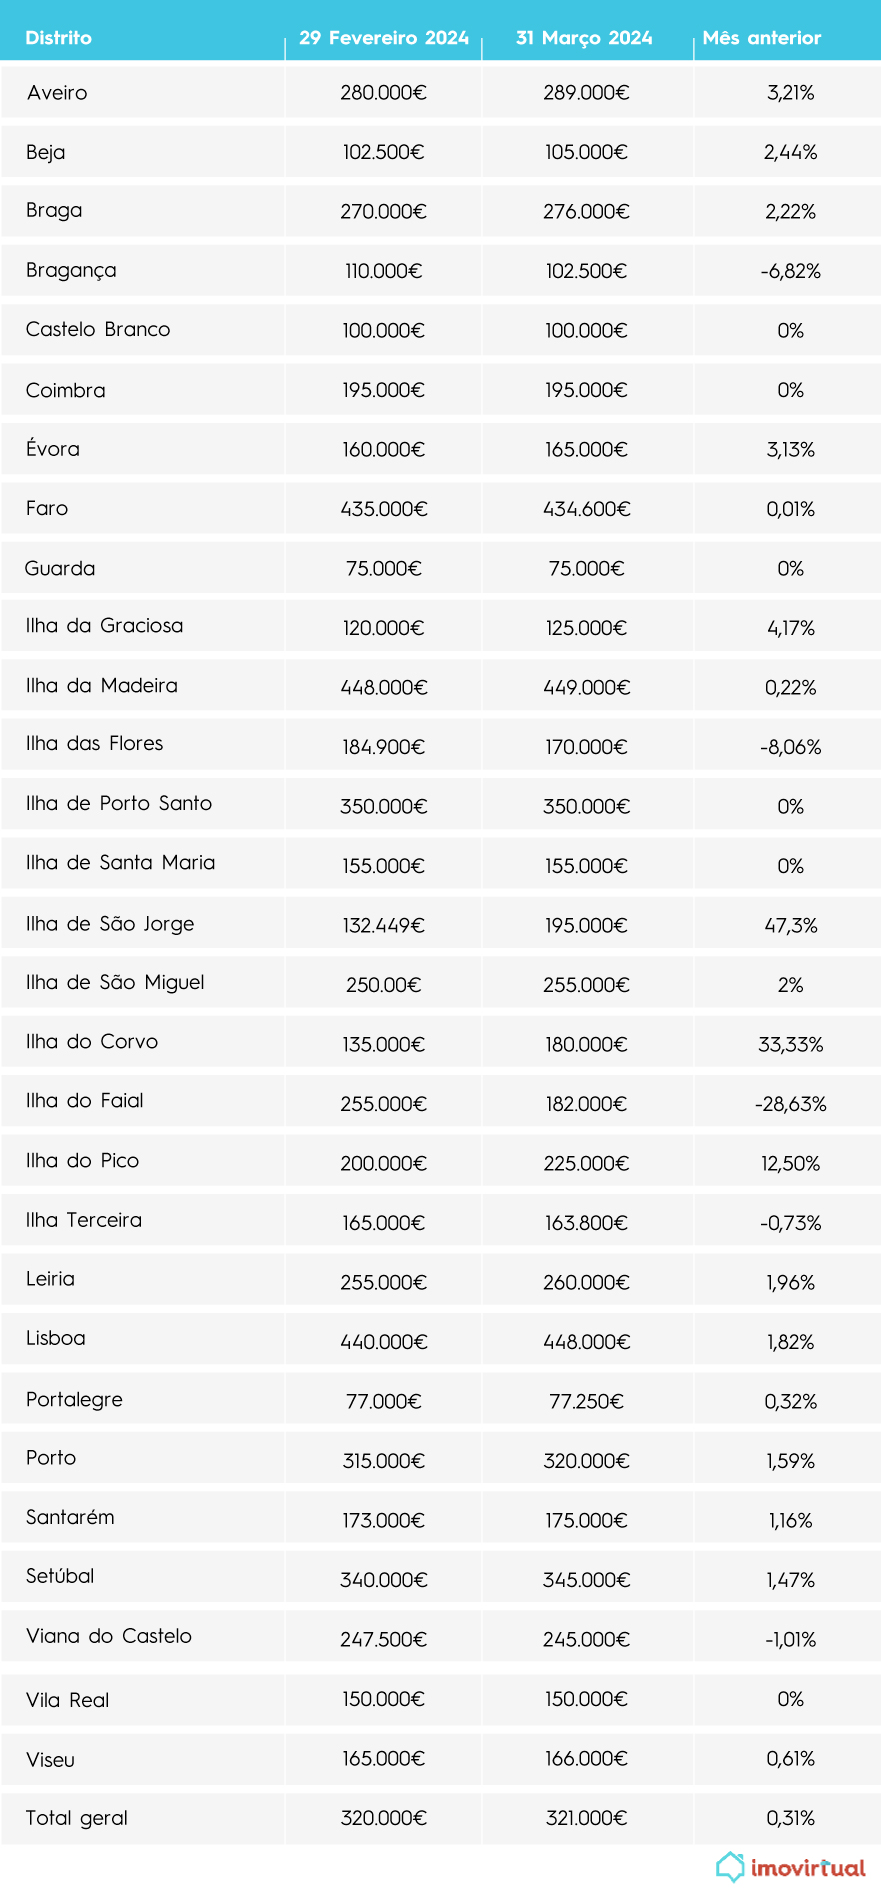 Quanto custa comprar  uma casa em portugal
tabelas de venda